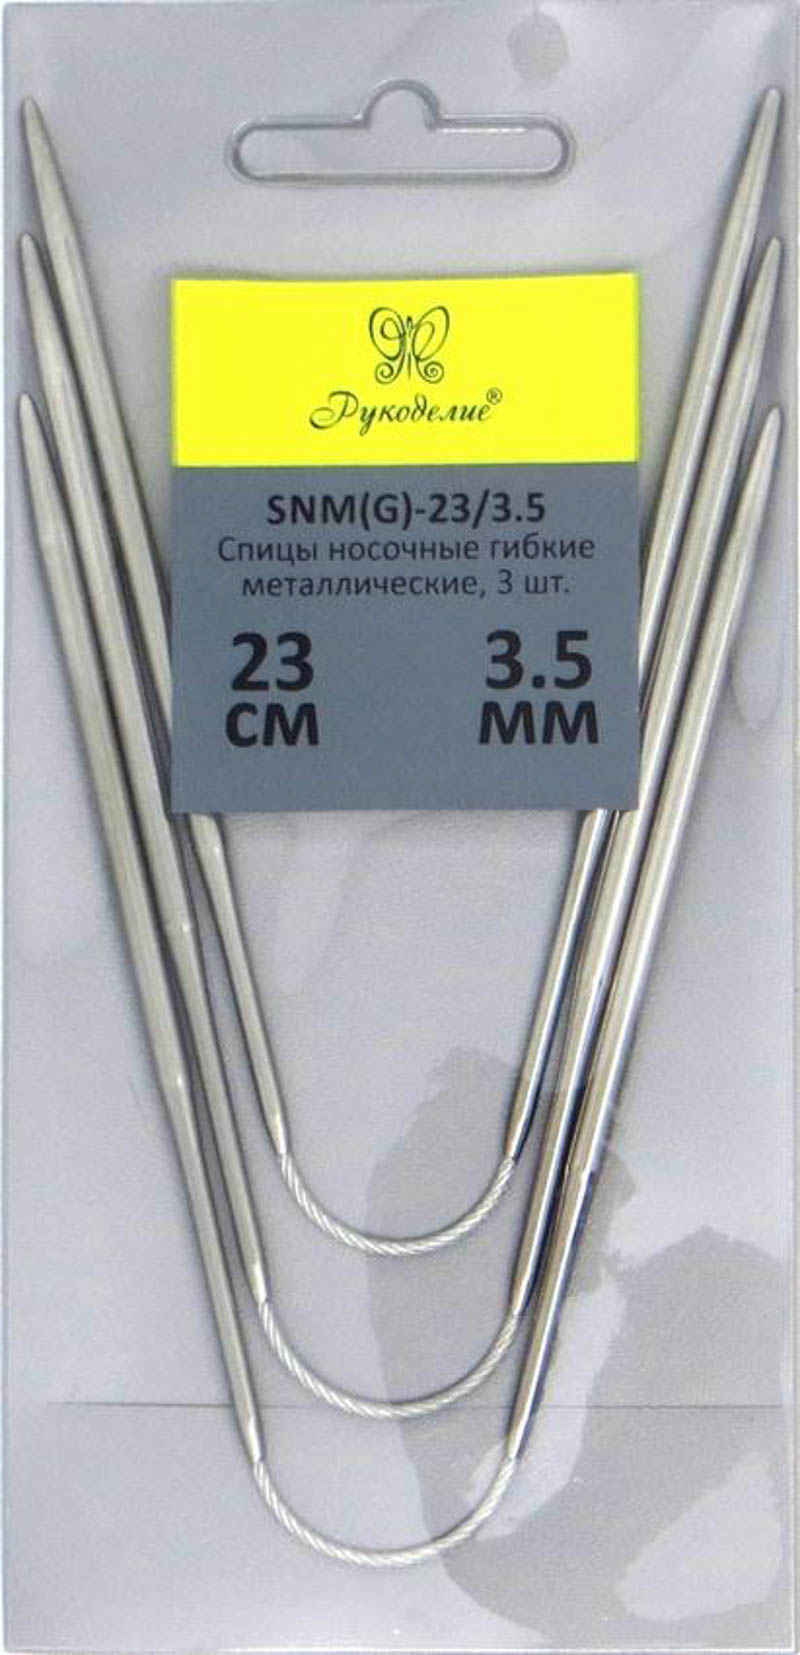 Спицы "Рукоделие" SNM(G)-23/3.5 носочные гибкие металл 3,5мм, 23см (3шт.)на металлическом тросике